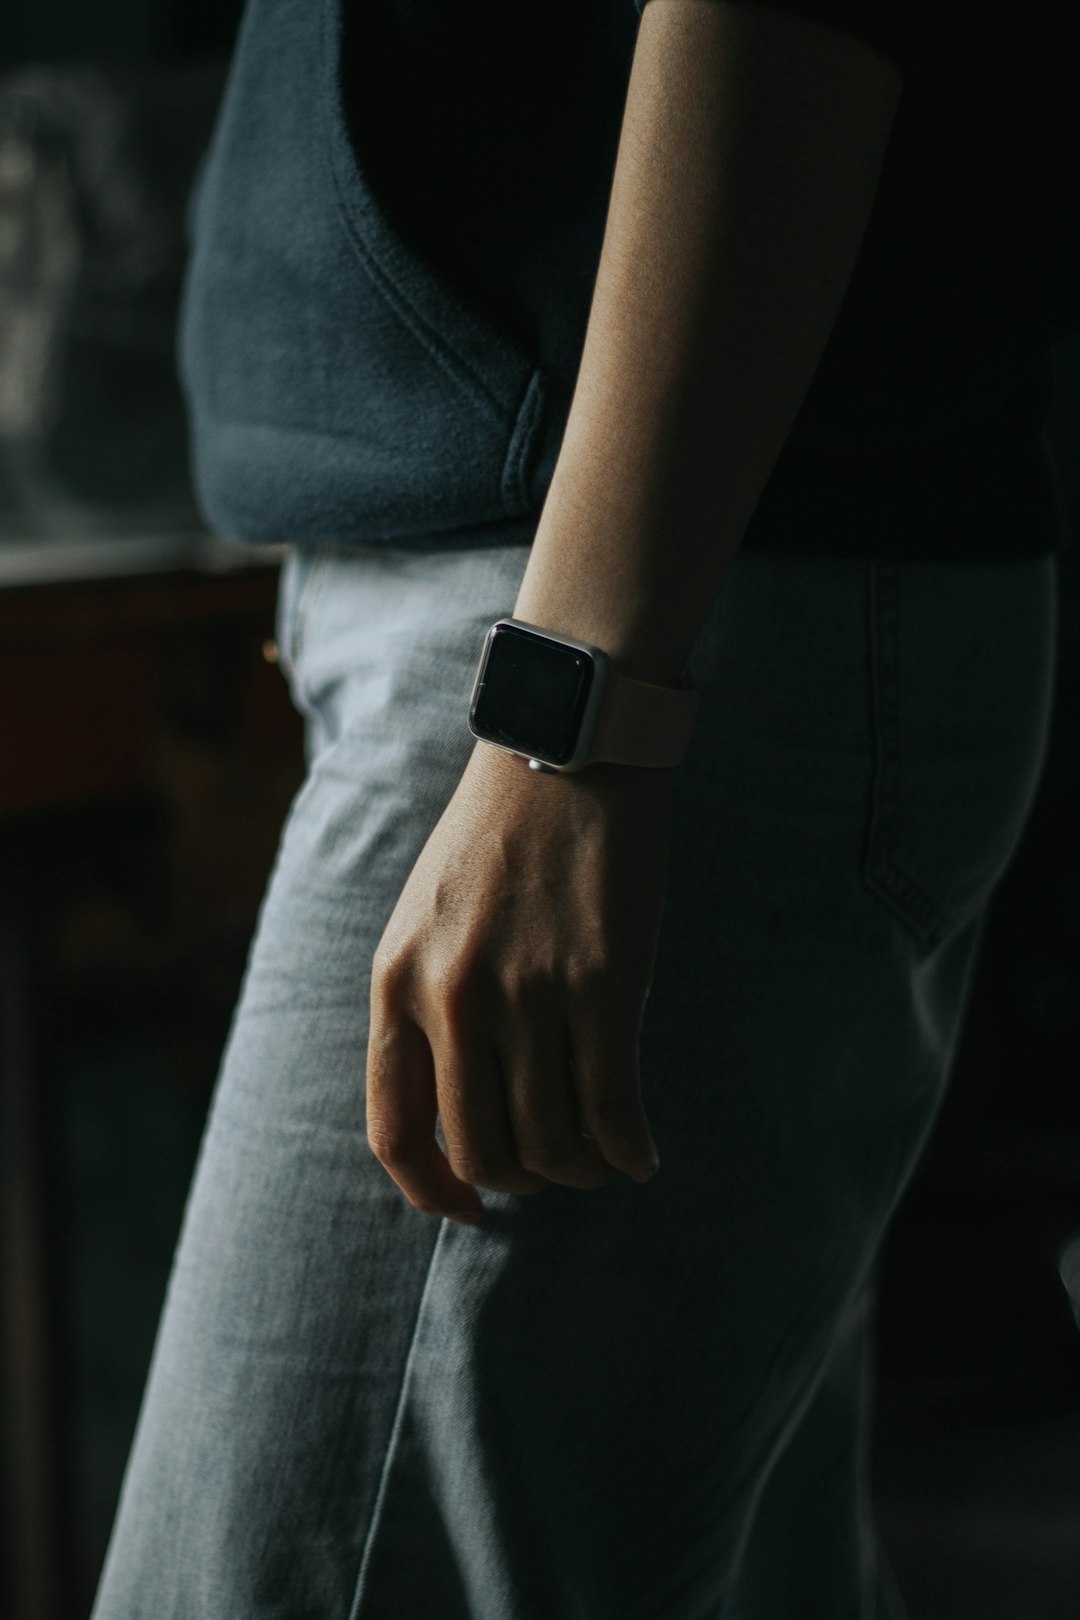 person in gray denim jeans wearing black apple watch